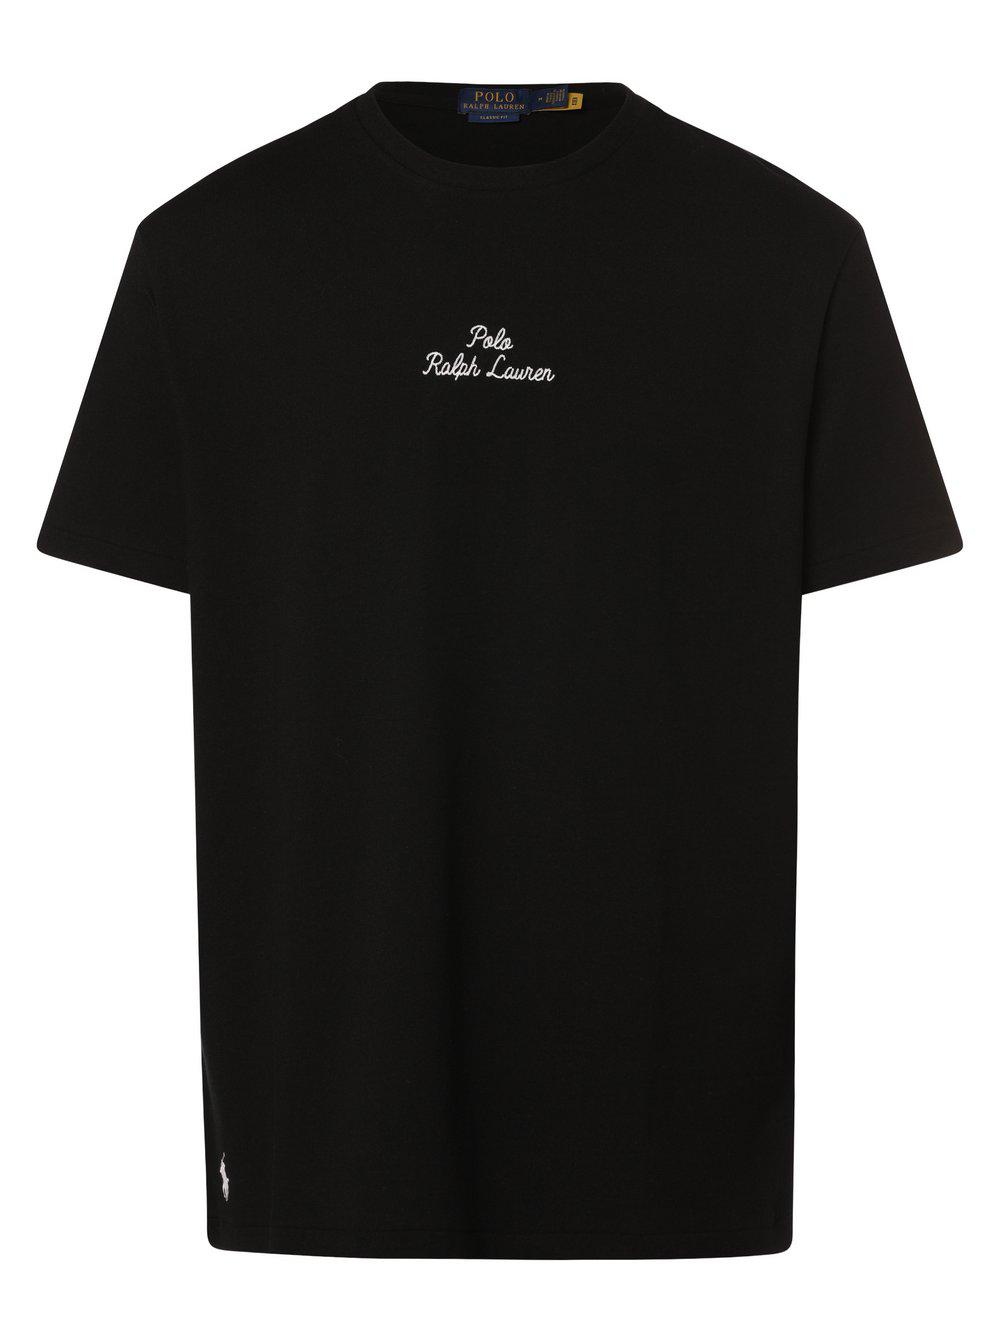 Polo Ralph Lauren T-Shirt Herren Baumwolle Rundhals, schwarz von Polo Ralph Lauren